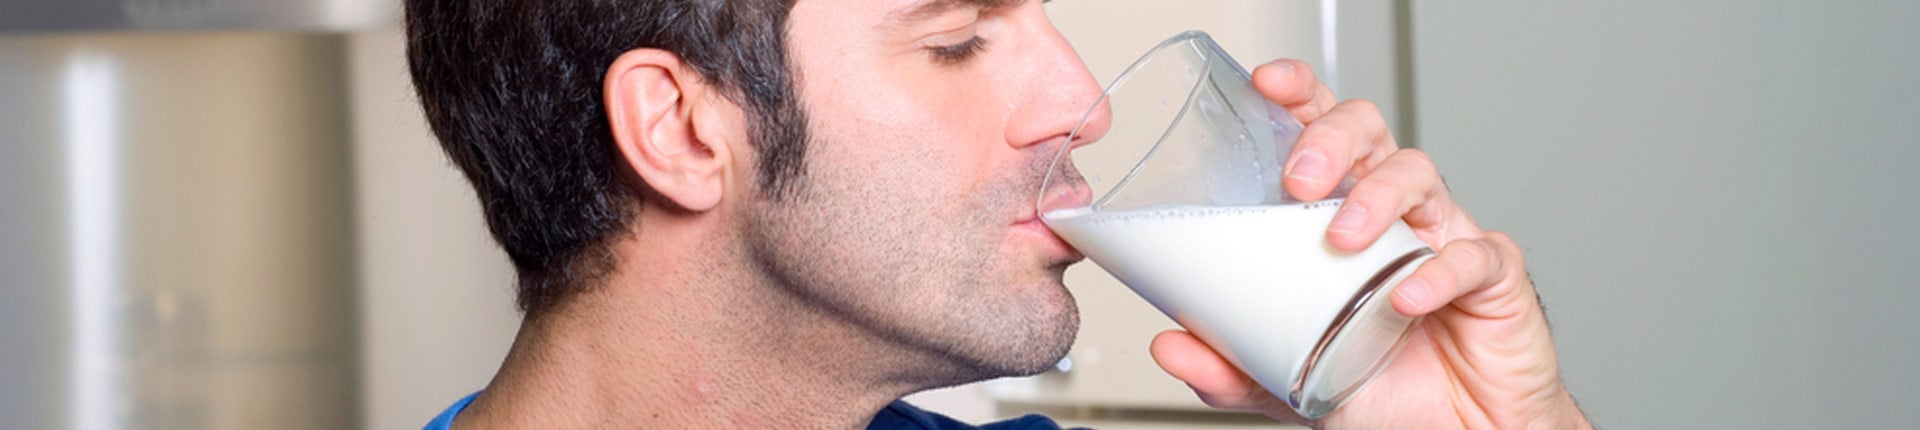 Mleko, testosteron i  płodność. Czy mleko jest zdrowe?